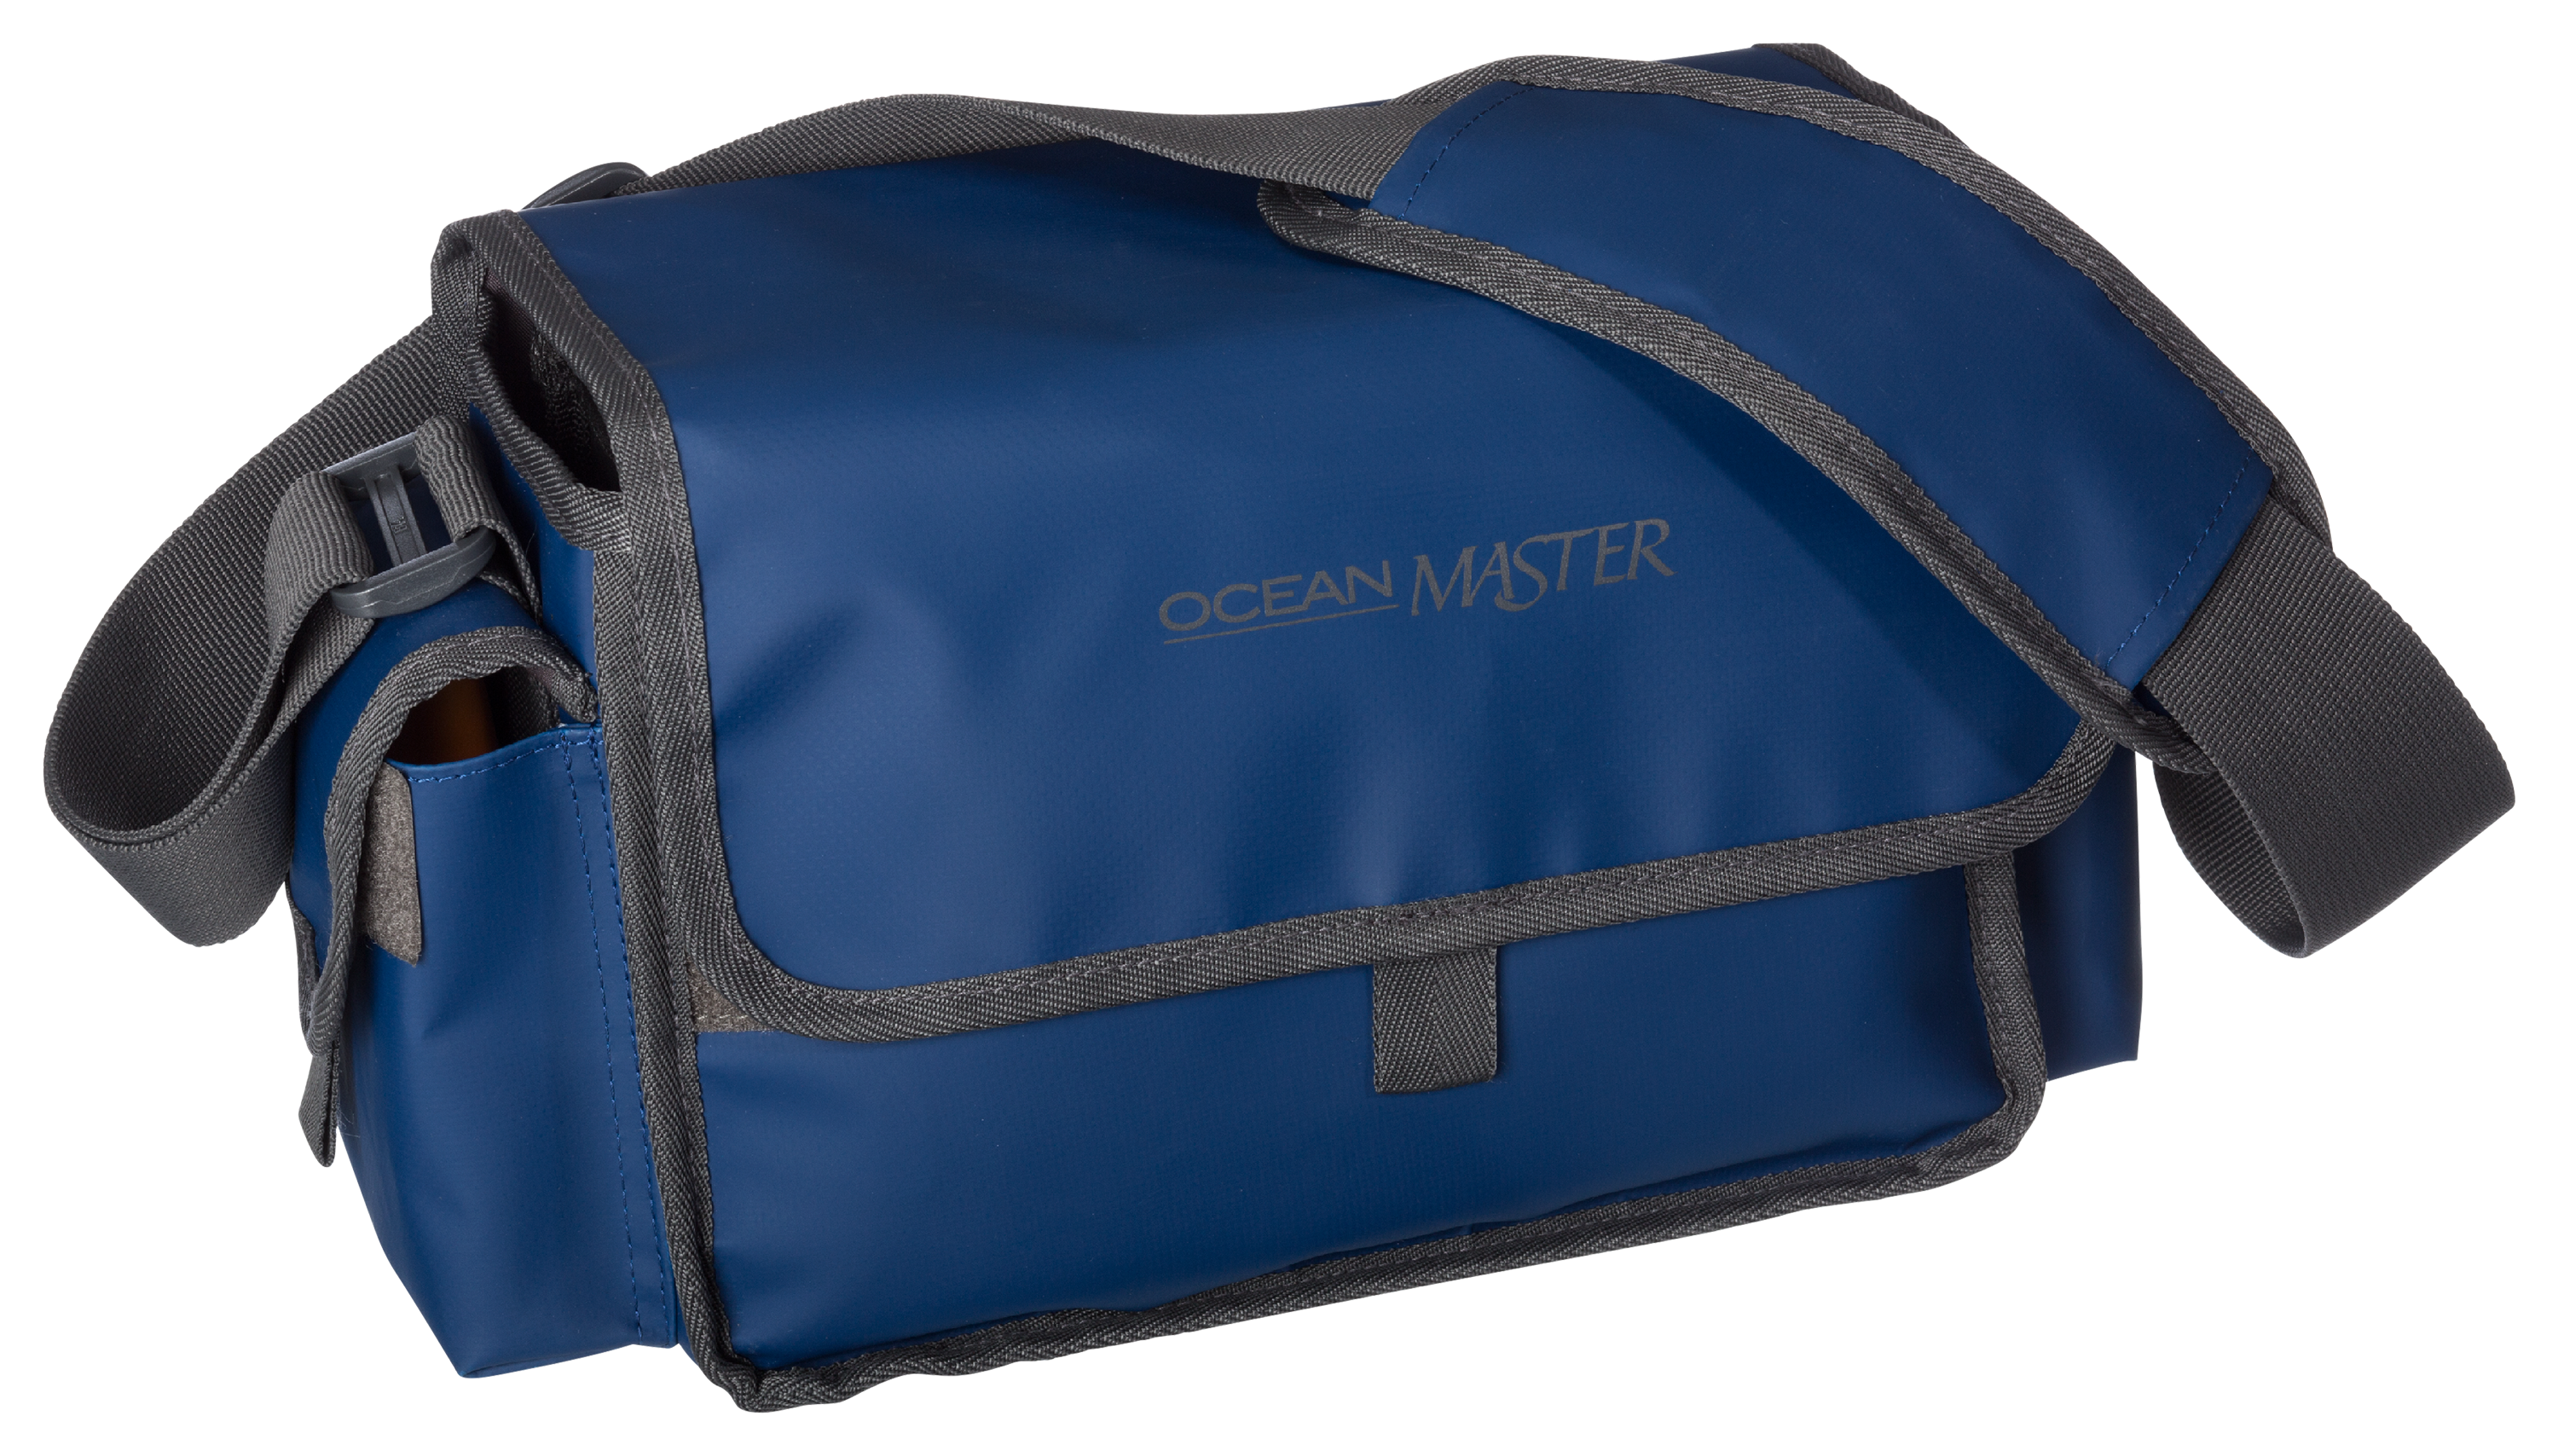 Offshore Angler Ocean Master Surf Bag